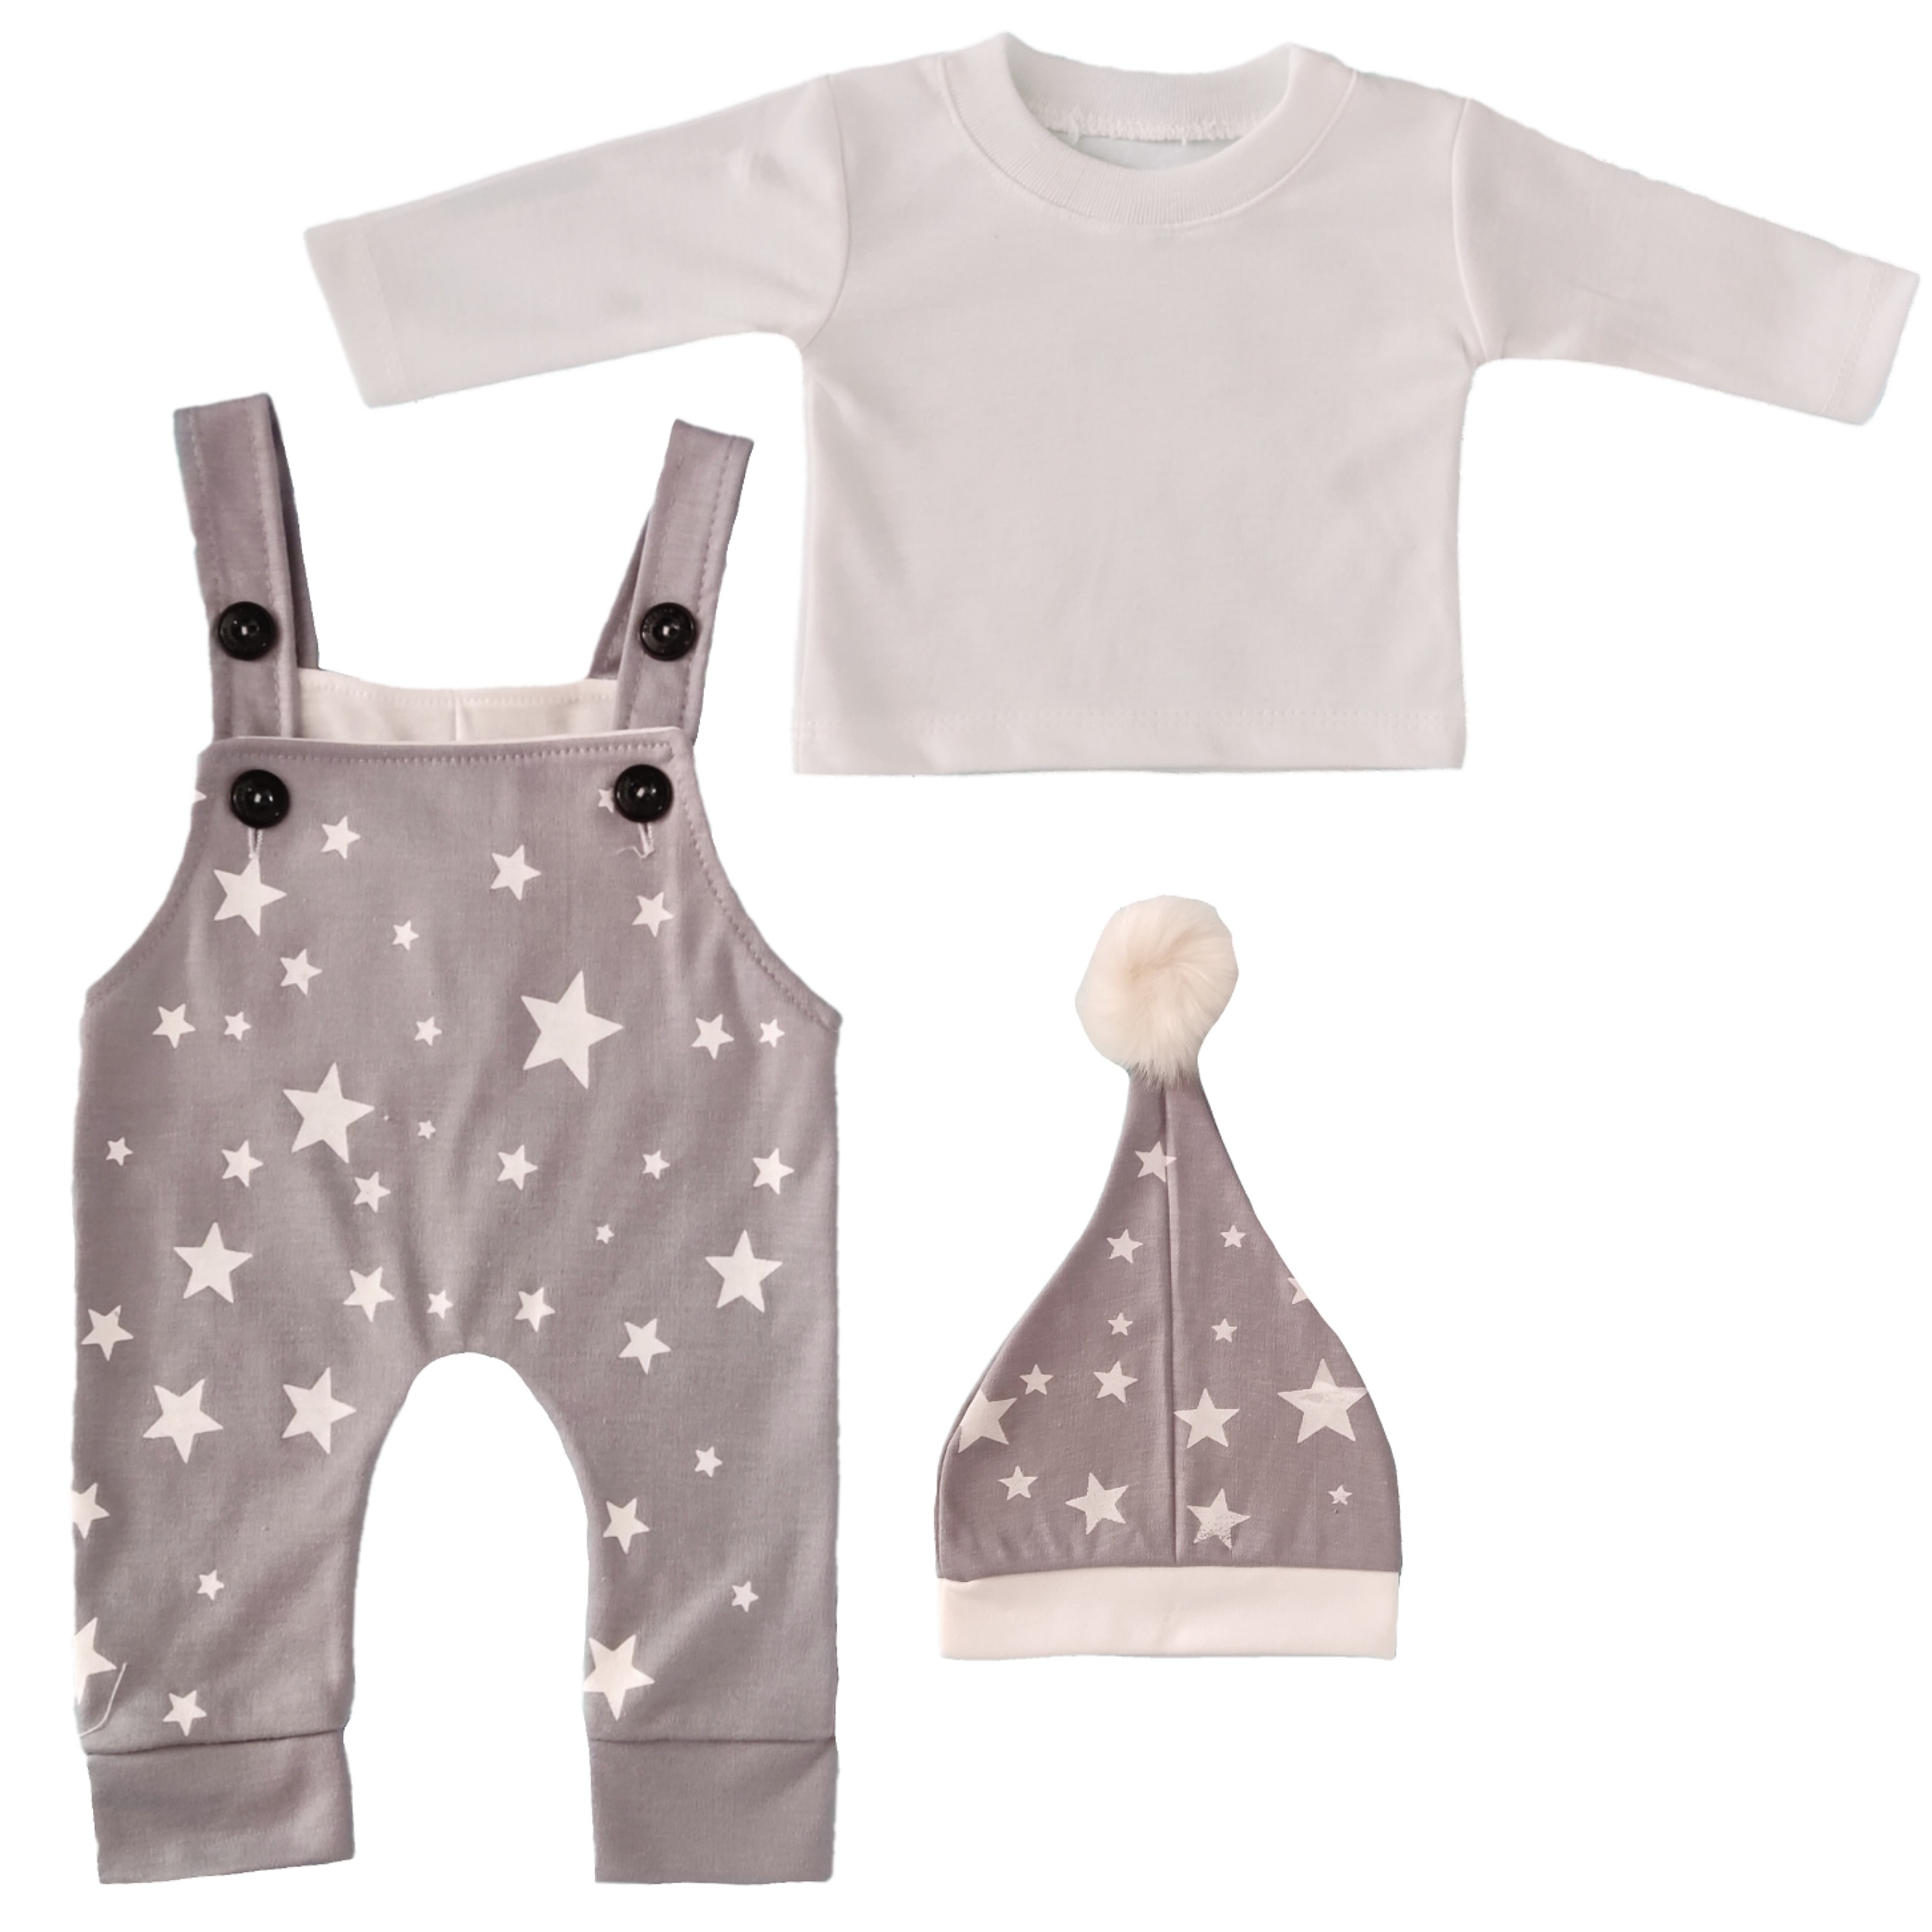 نقد و بررسی ست 3 تکه لباس نوزادی کد 16 توسط خریداران